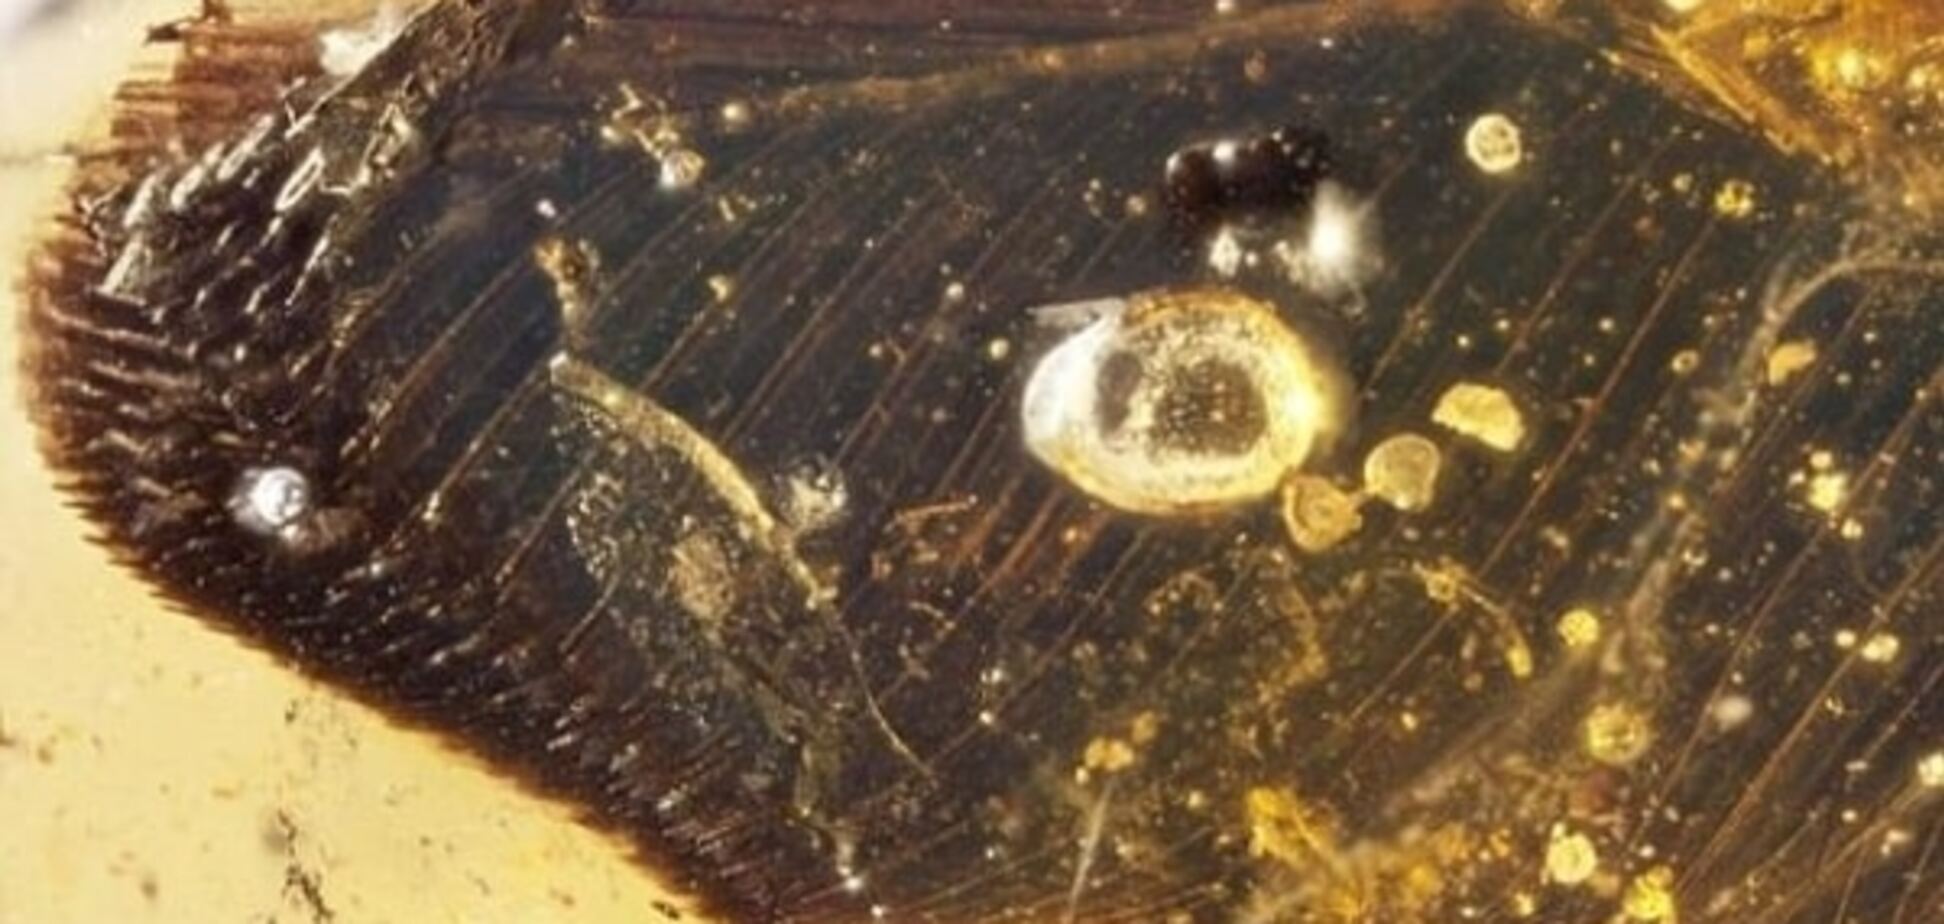 Меньше колибри: в янтаре обнаружены останки древних птиц, живших 100 миллионов лет назад. Фото